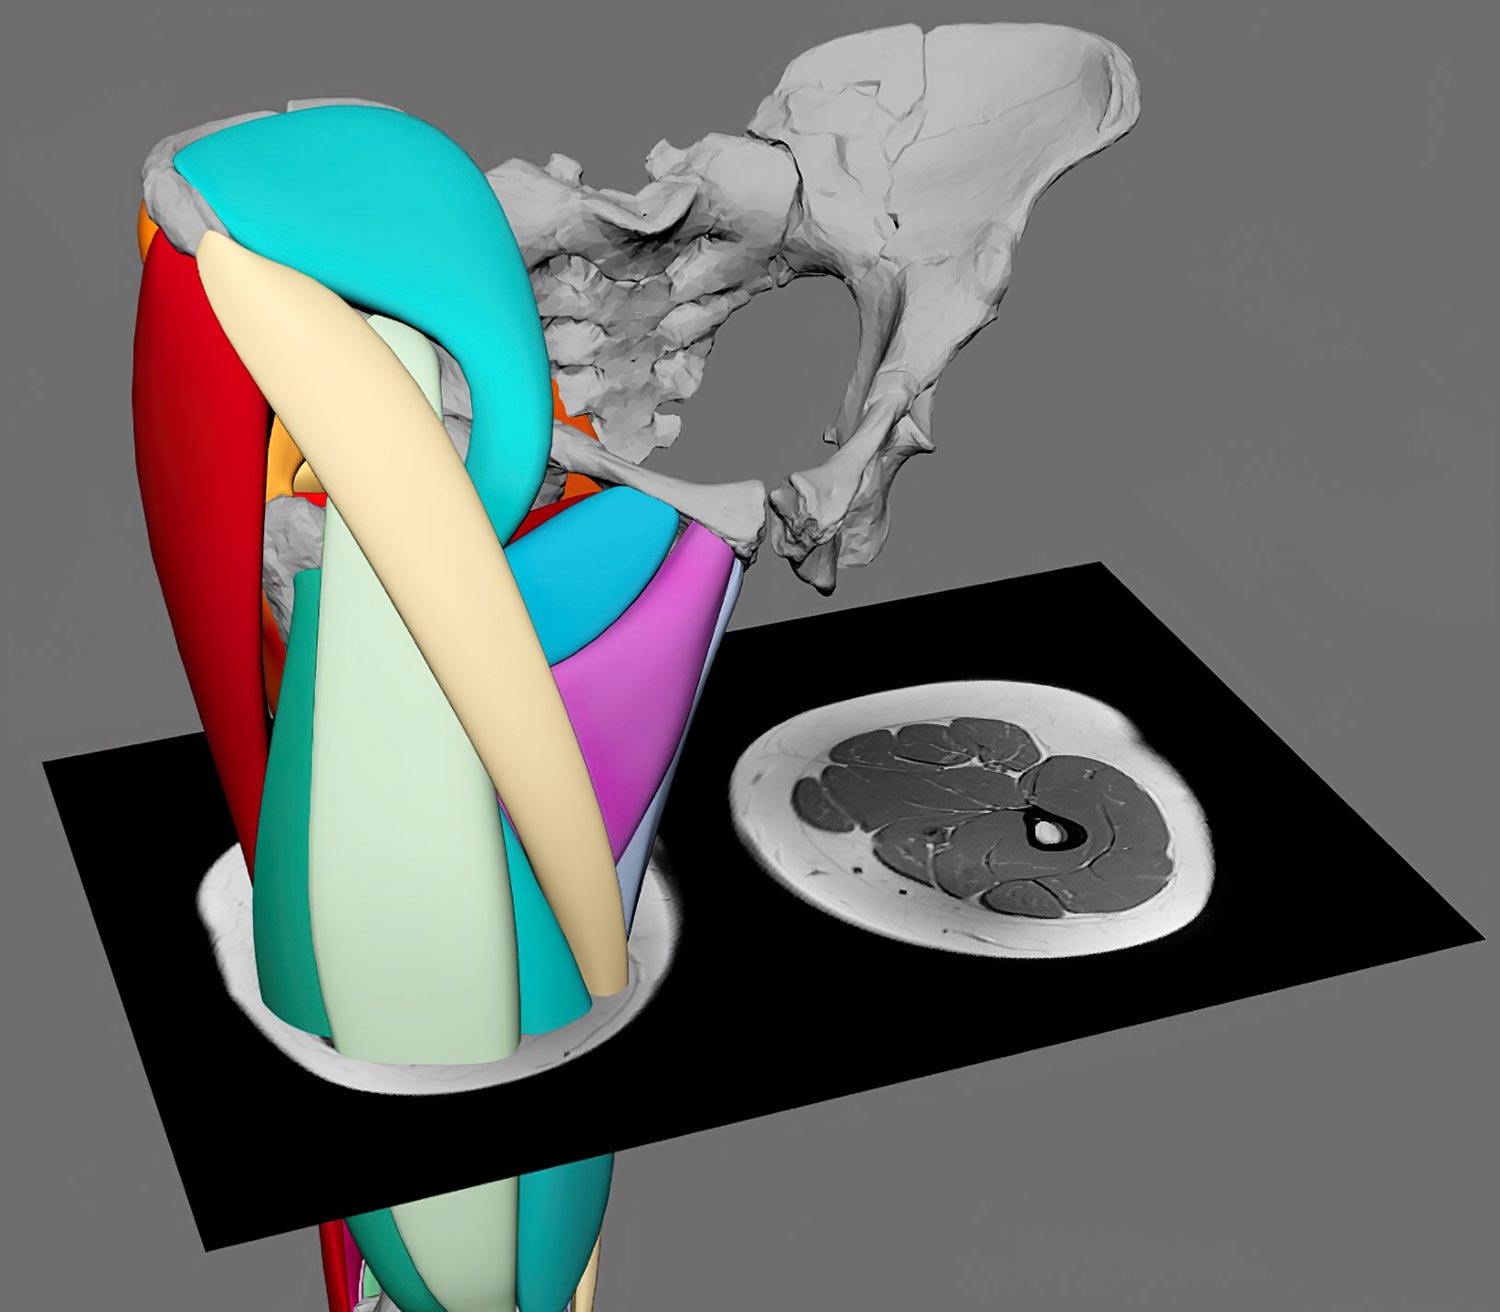 La reconstrucción muscular en 3D revela que ‘Lucy’ de 3,2 millones de años podría pararse como los humanos modernos